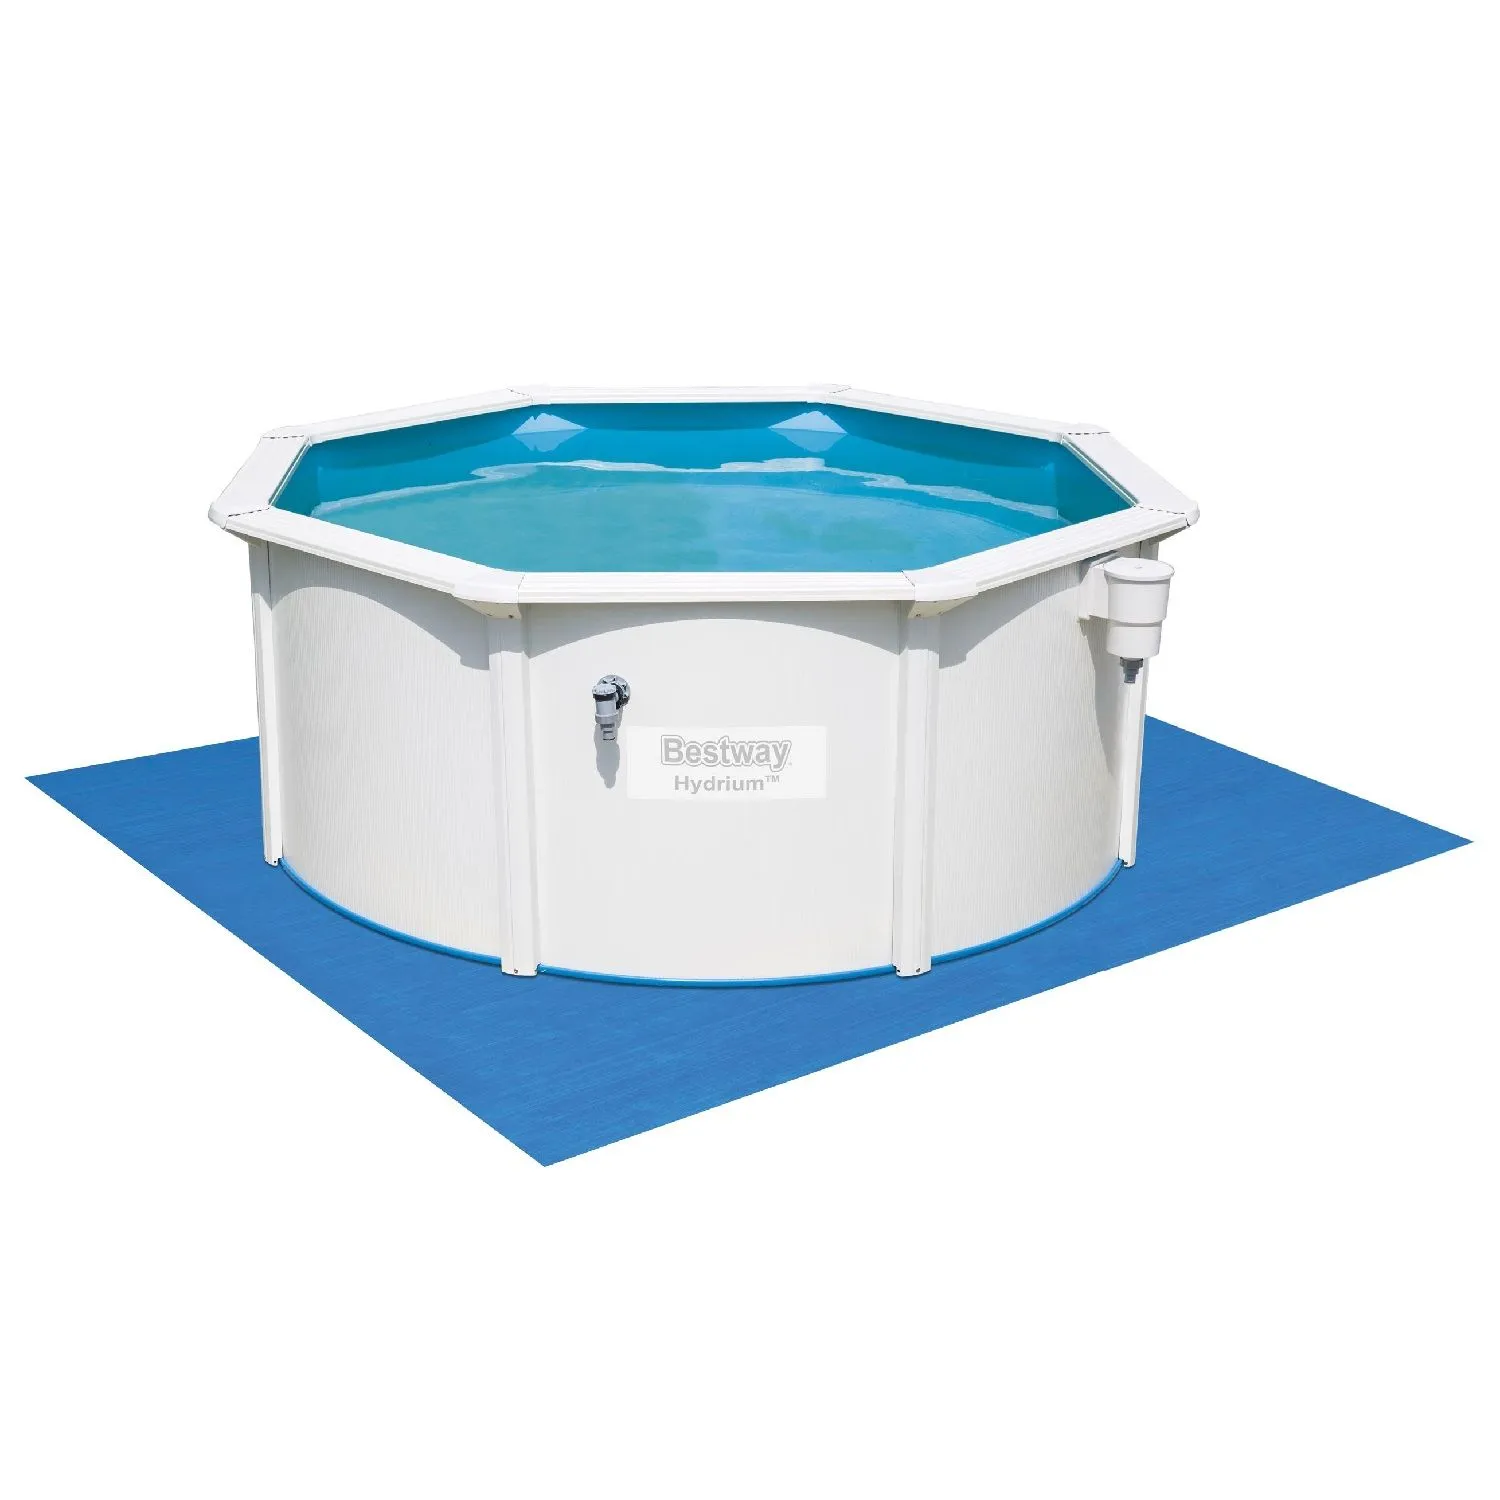 Сборный круглый бассейн Bestway Hydrium 56566 (300x120 см) с песочным фильтром, лестницей и тентом от магазина gidro-z